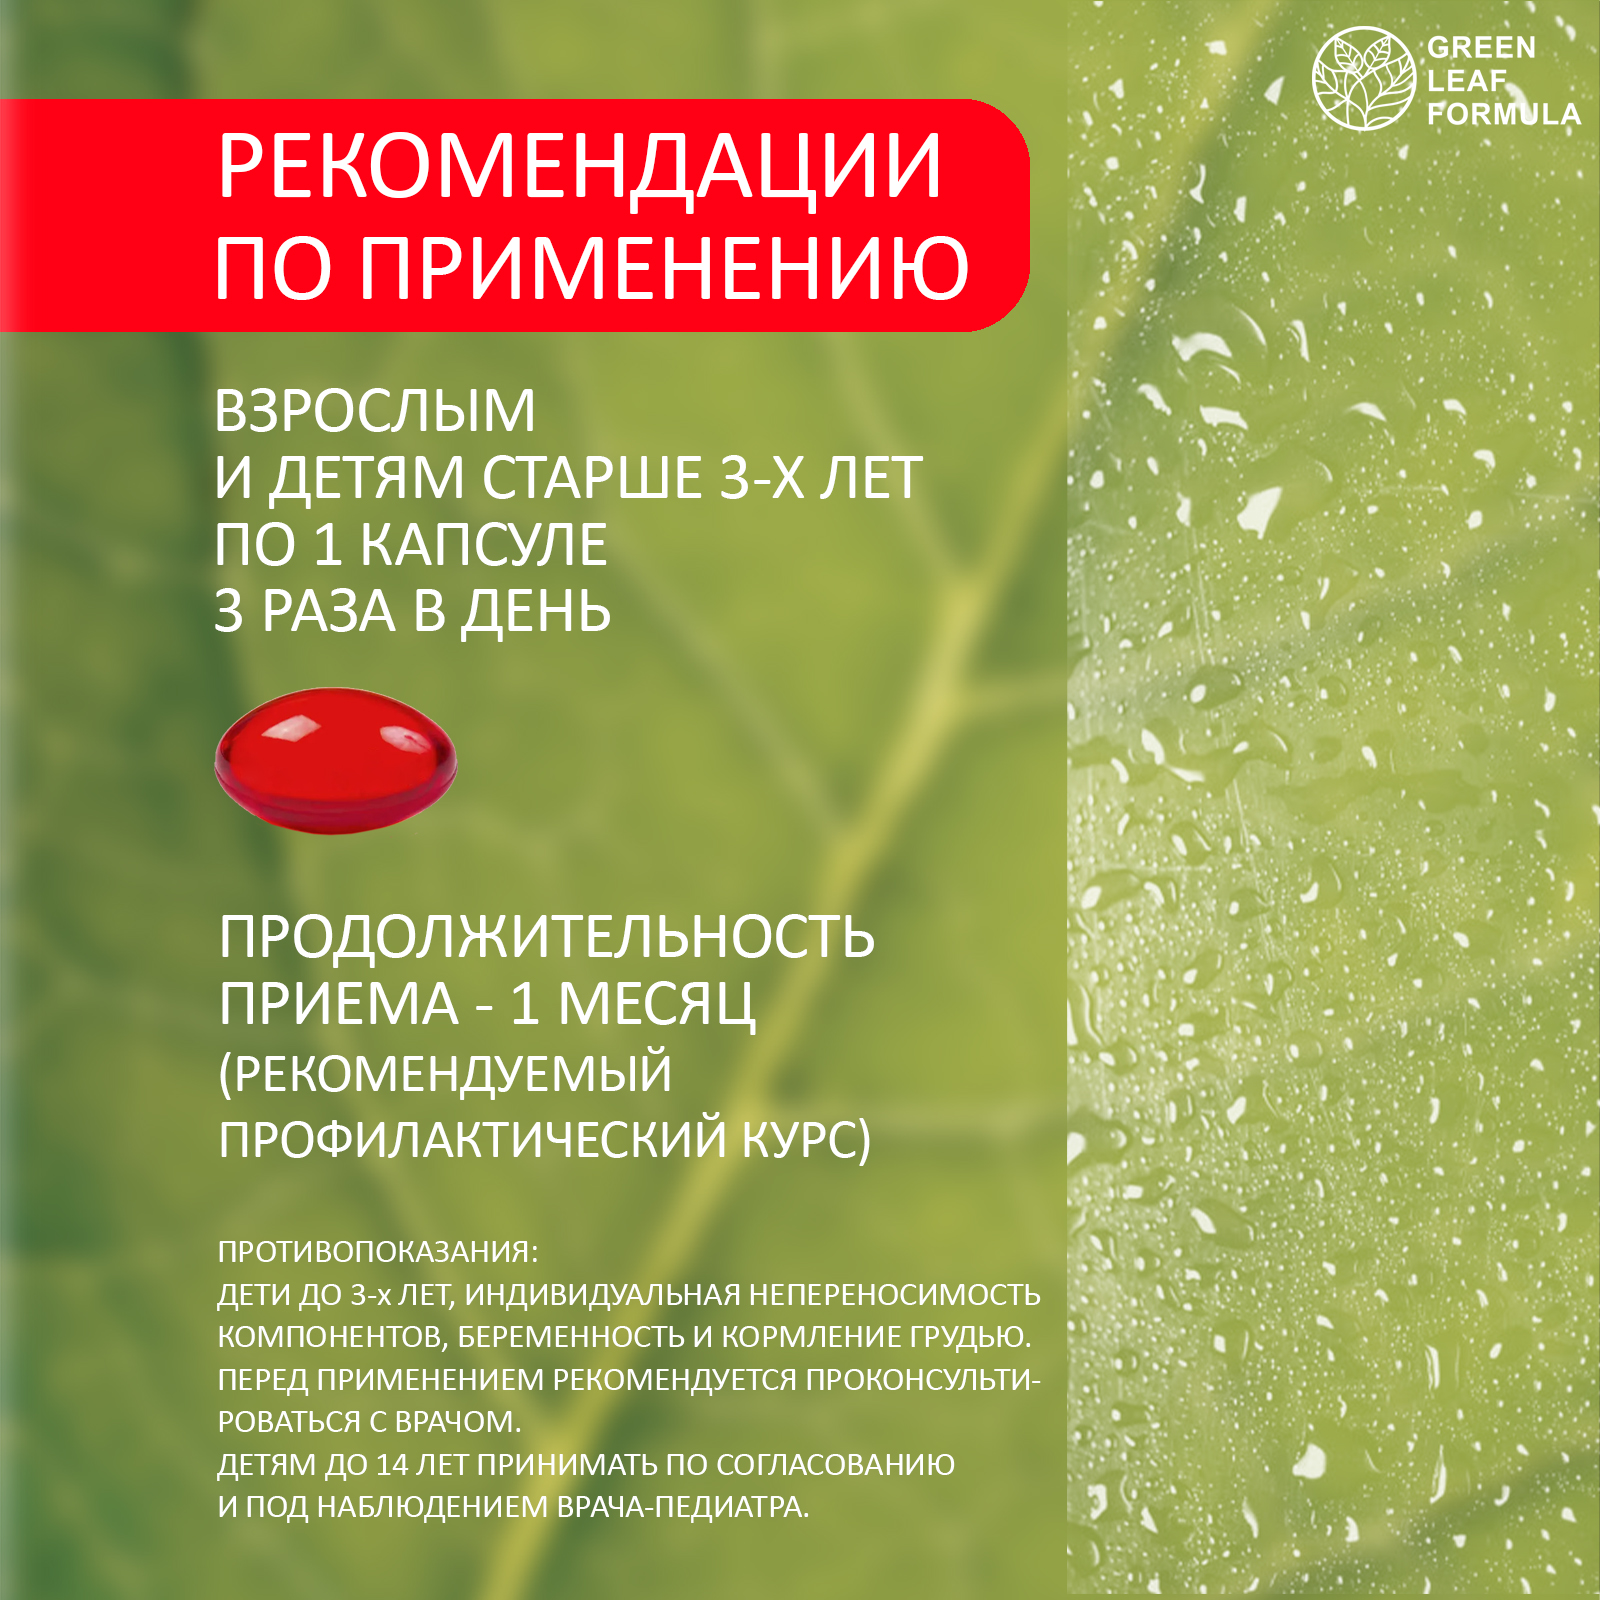 Детский пробиотик и витамины Green Leaf Formula мультивитамины для детей от 3 лет для иммунитета для кишечника - фото 18